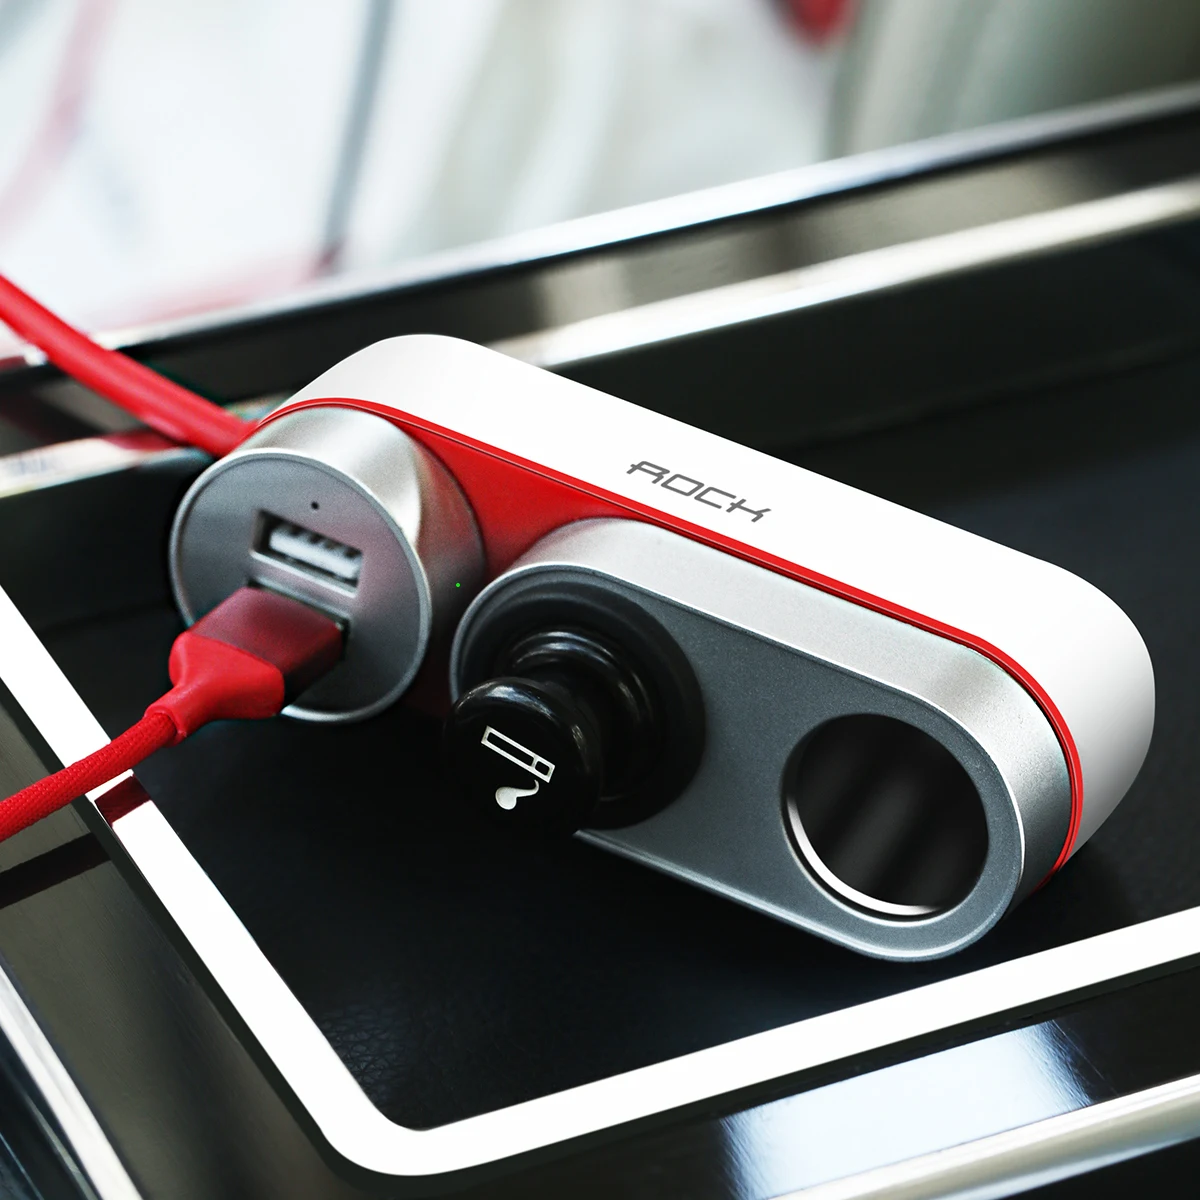 ROCK 2 USB автомобильный разветвитель зарядное устройство розетка для автомобильного прикуривателя для iPhone/iPad/samsung/зарядка для телефона планшета 4.8A автомобильное зарядное устройство